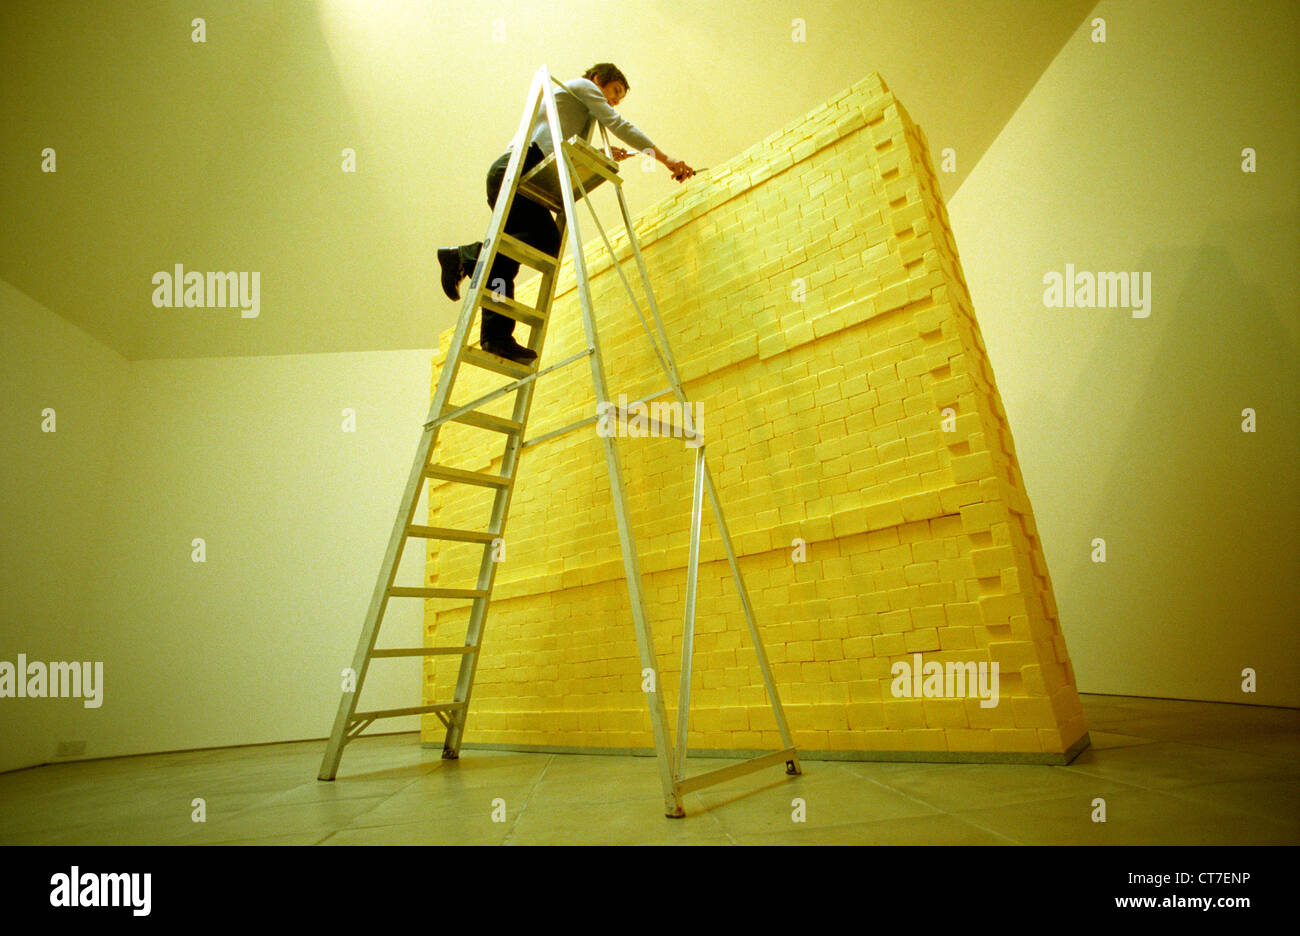 Donna artista sulla scaletta, scolpire una parete realizzata interamente di burro. Ha pesato di tre quarti di una tonnellata ed è stato finanziato con il denaro della lotteria. Foto Stock